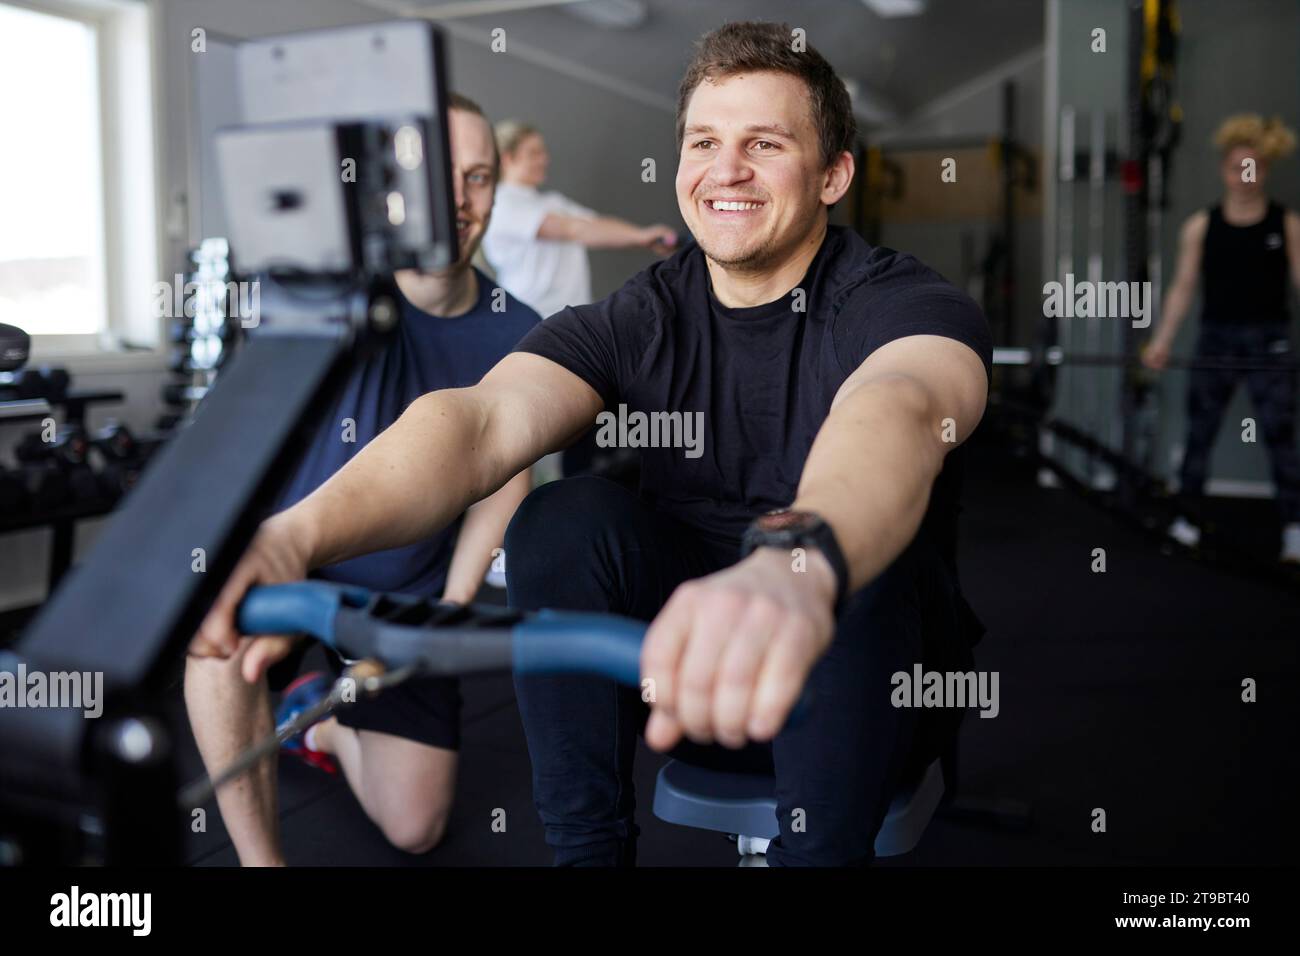 Lächelnder junger Mann, der auf Rudergerät vom Fitnesstrainer im Fitnessstudio trainiert Stockfoto